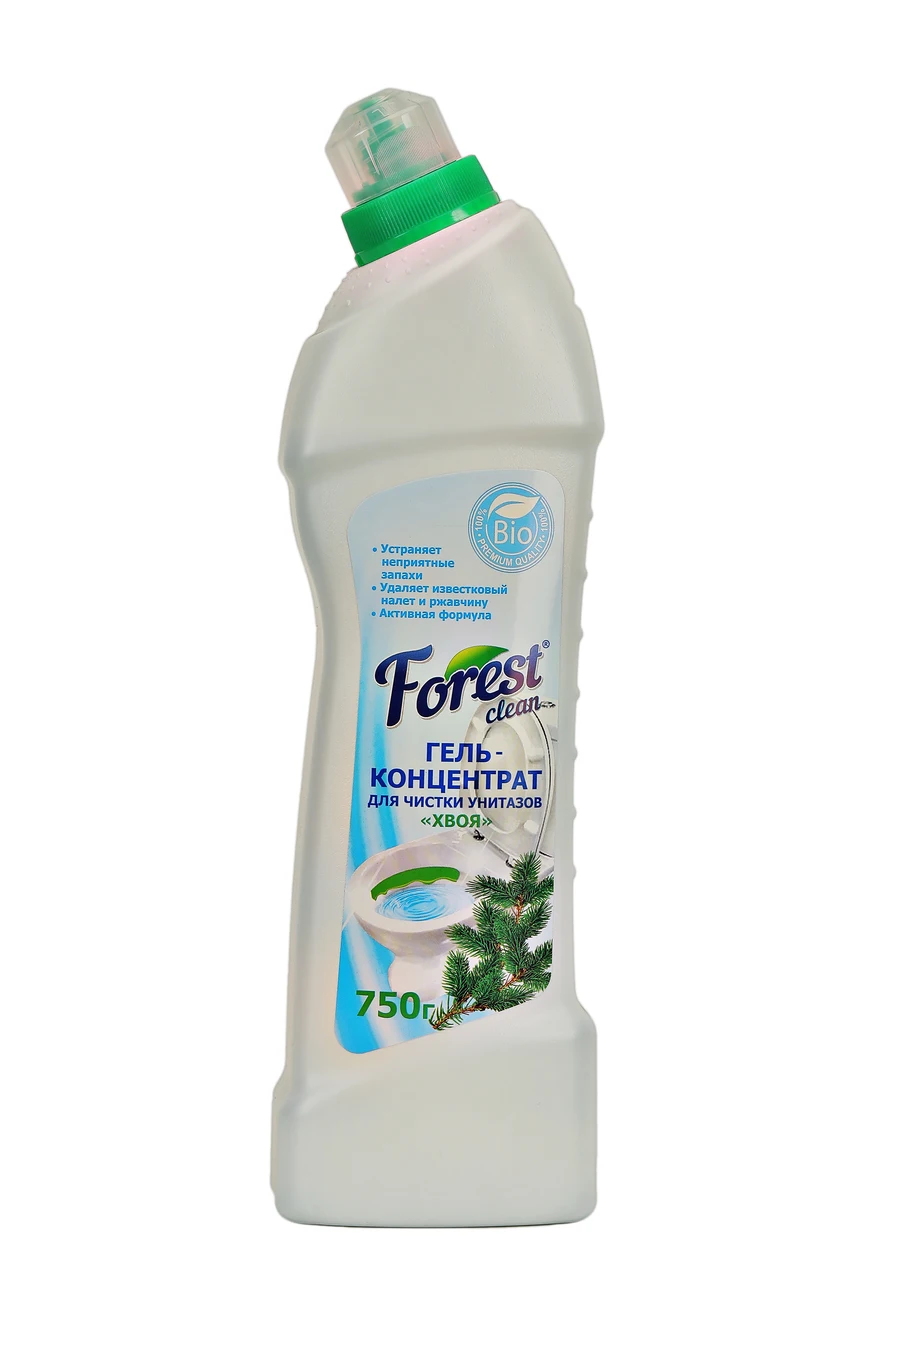 Forest clean моющее средство. Clean grass Gel. Forest clean. Forest clean гель-концентрат для чистки унитазов хвоя.